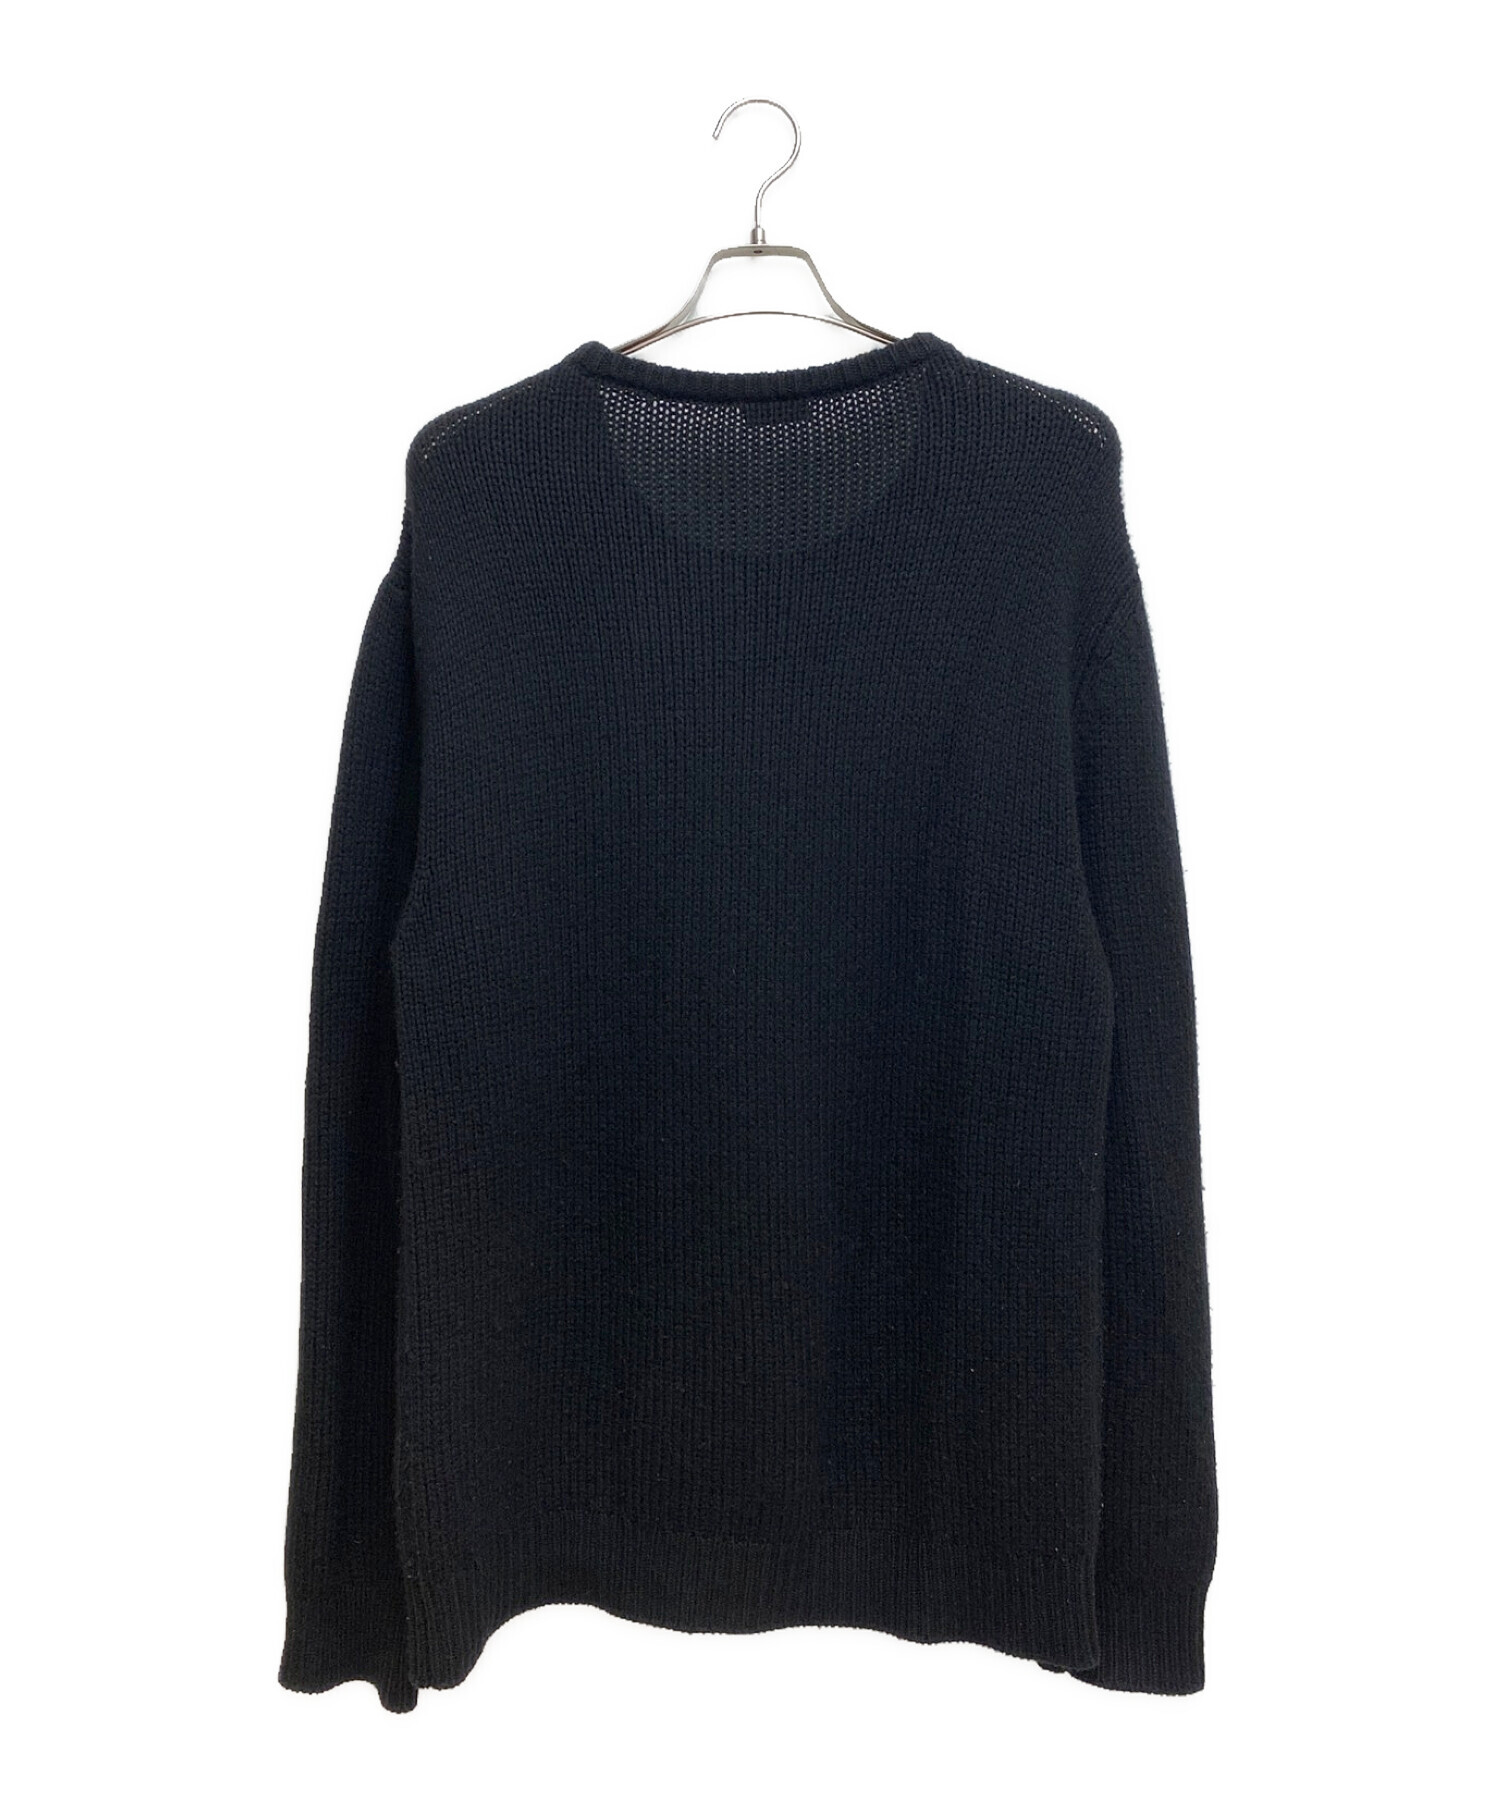 XL saint laurent paris oversized sweater - www ...